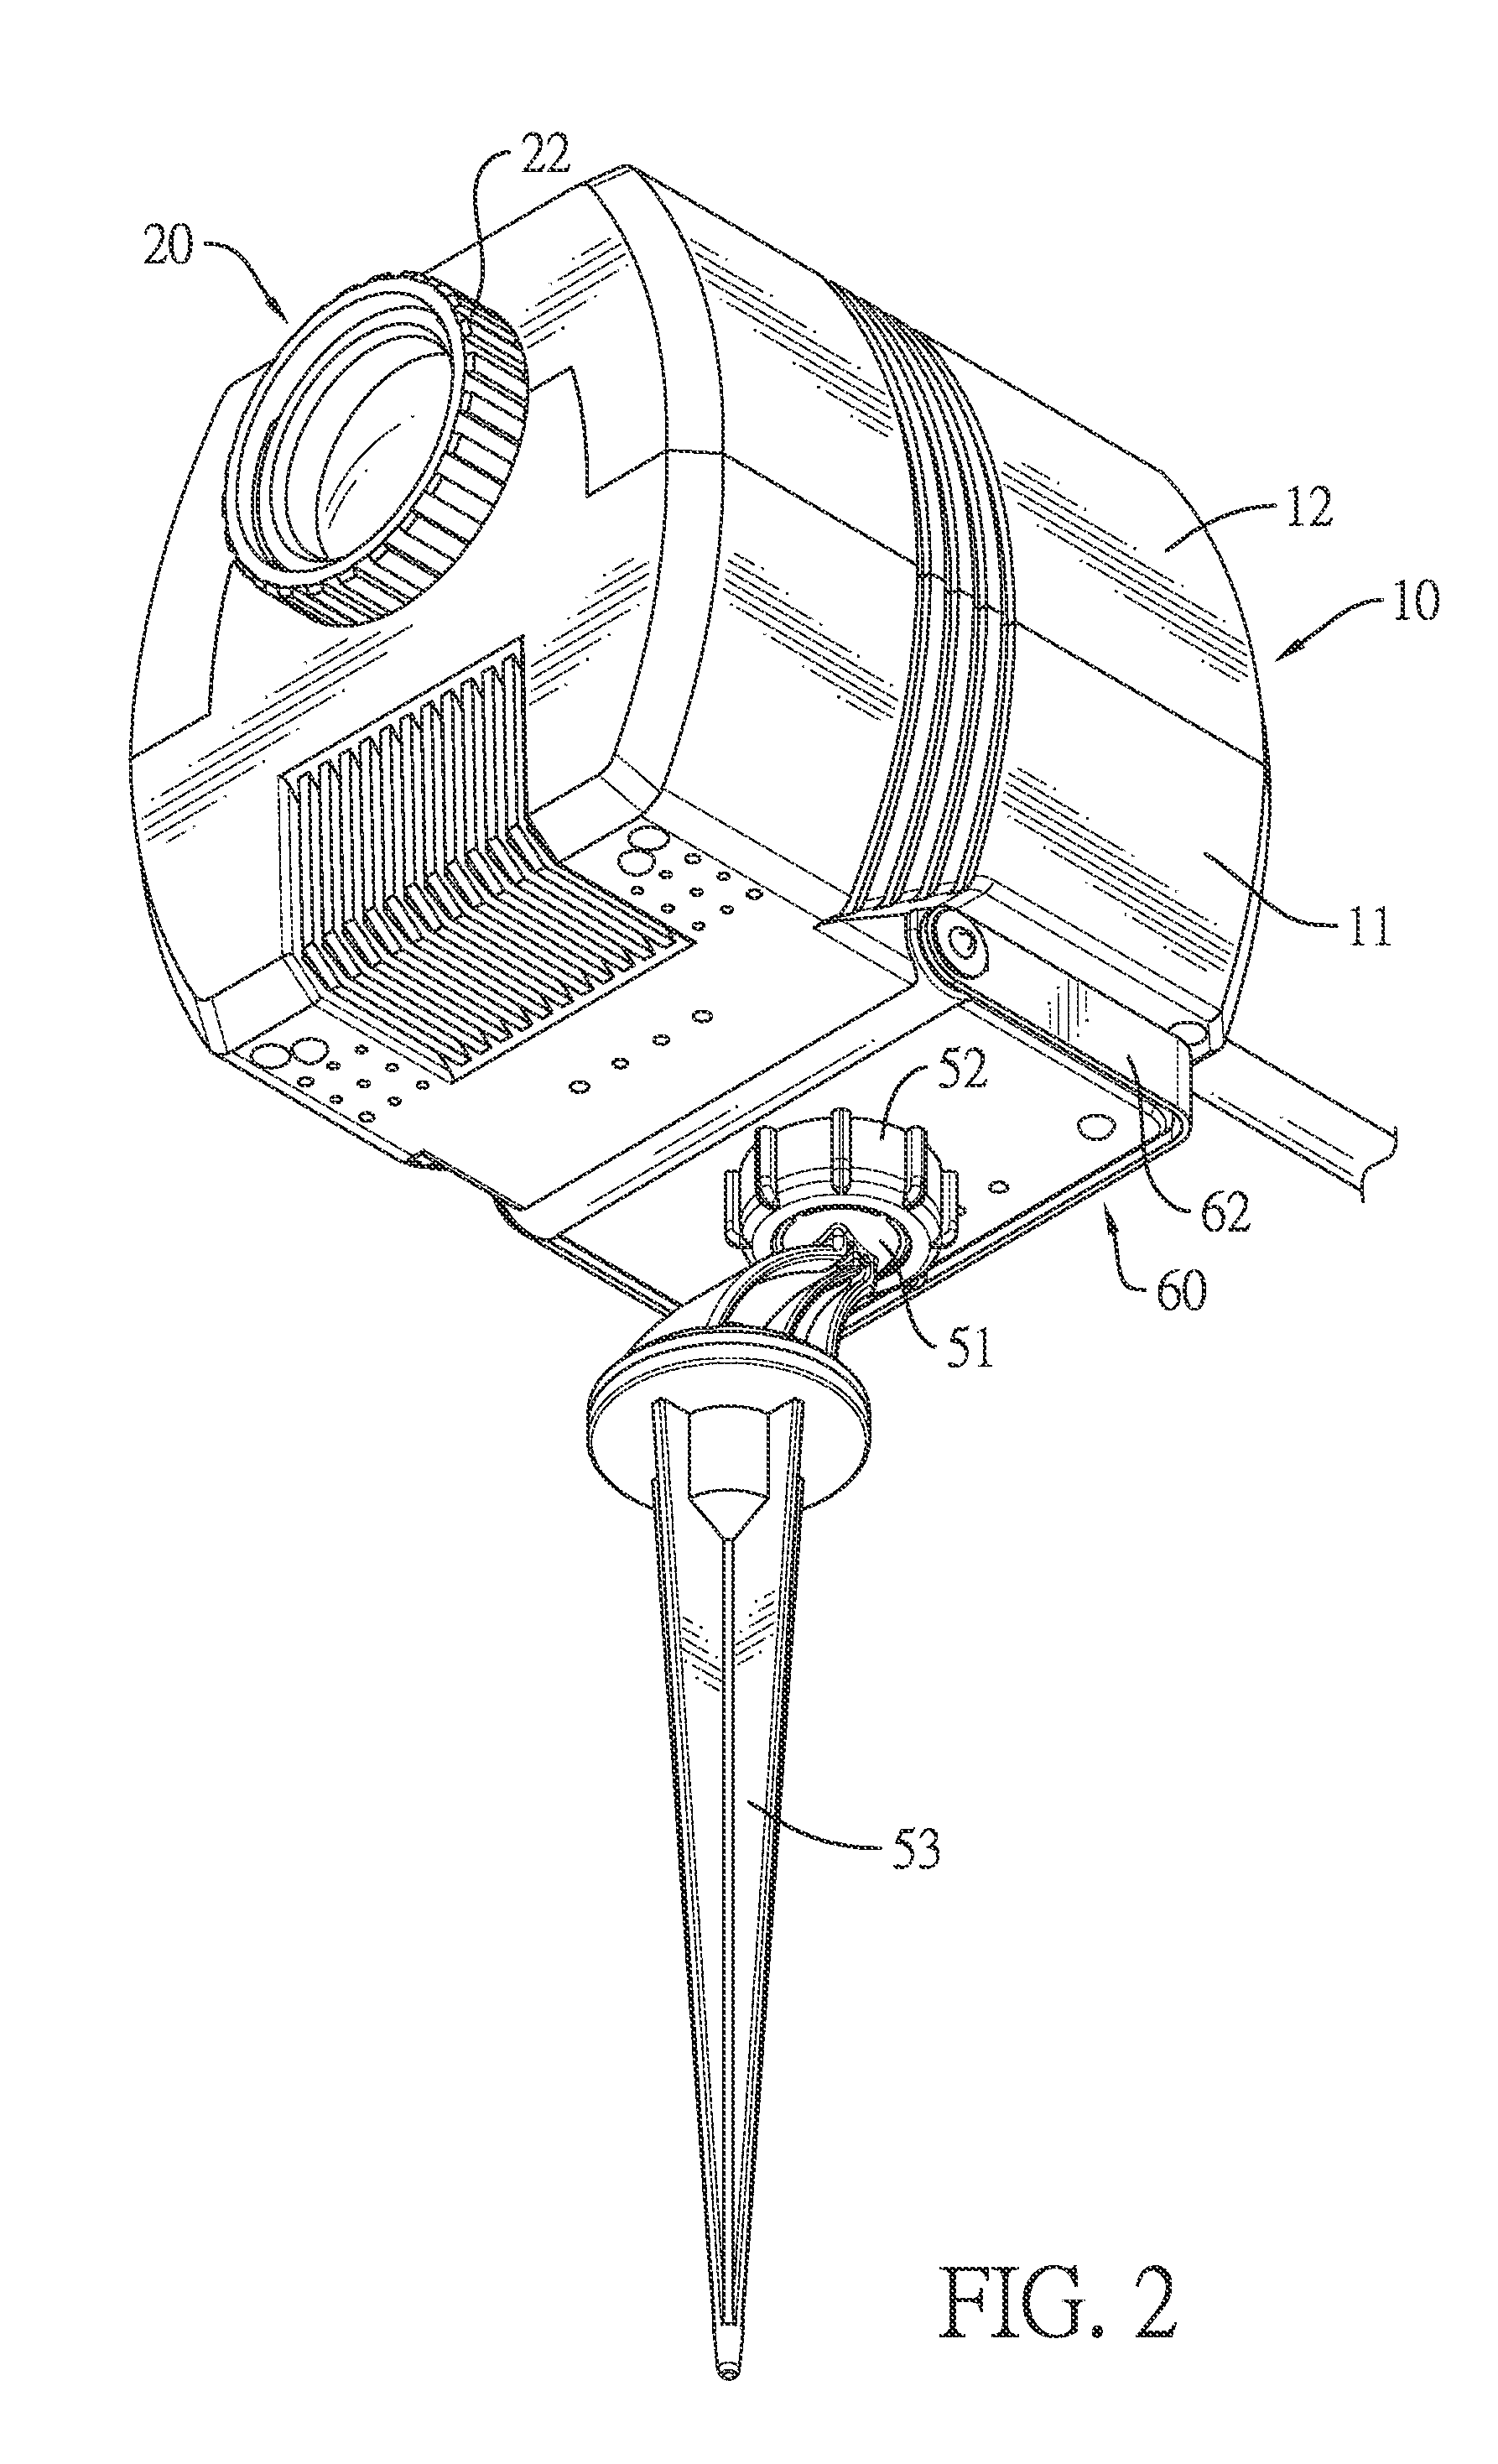 Indoor-outdoor projector